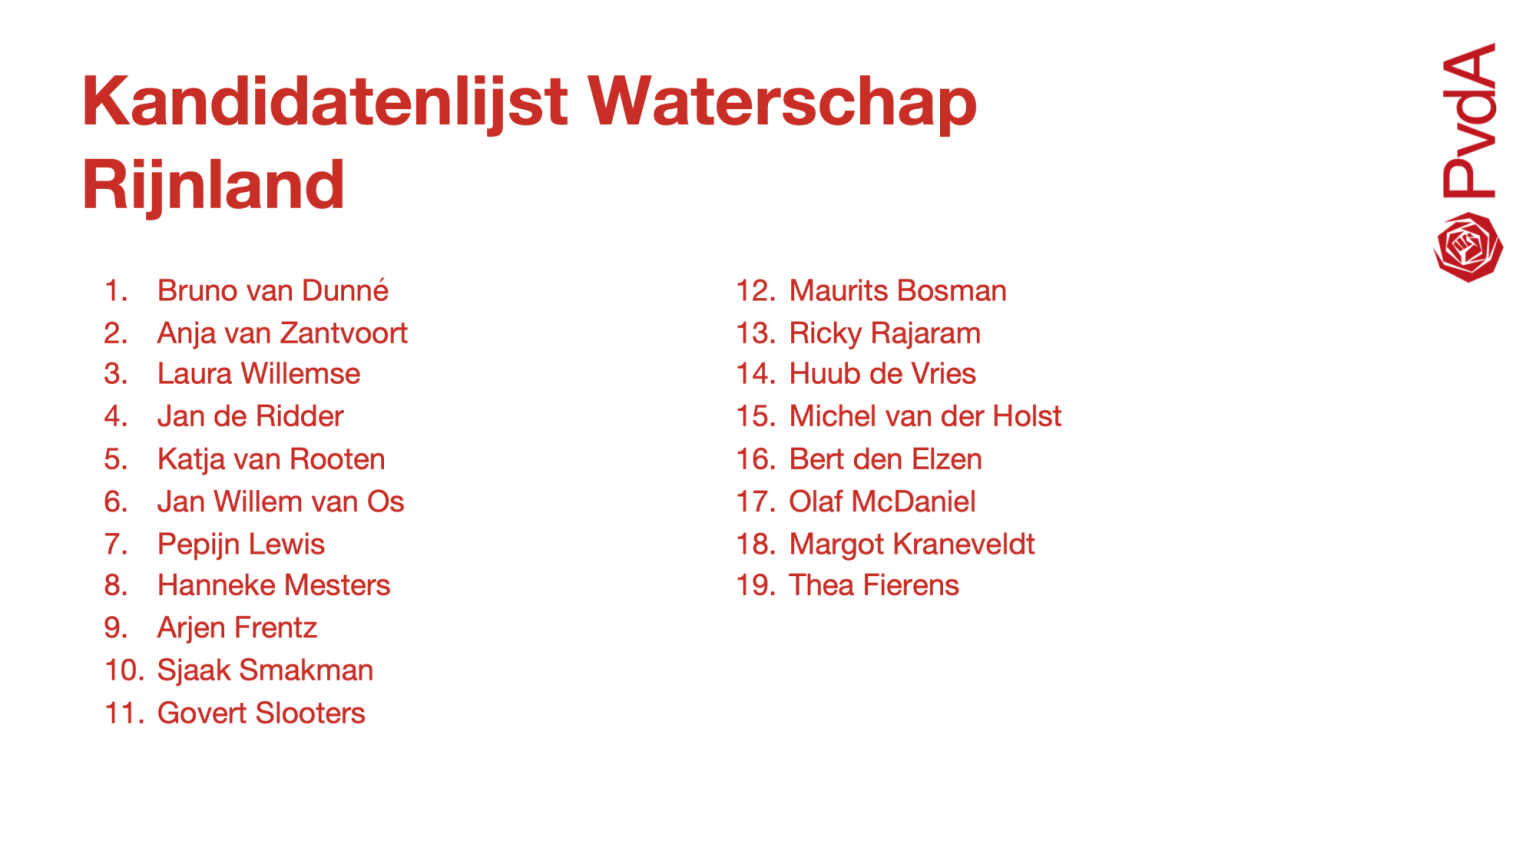 Kandidatenlijst Provinciale Staten en waterschappen vastgesteld! PvdA